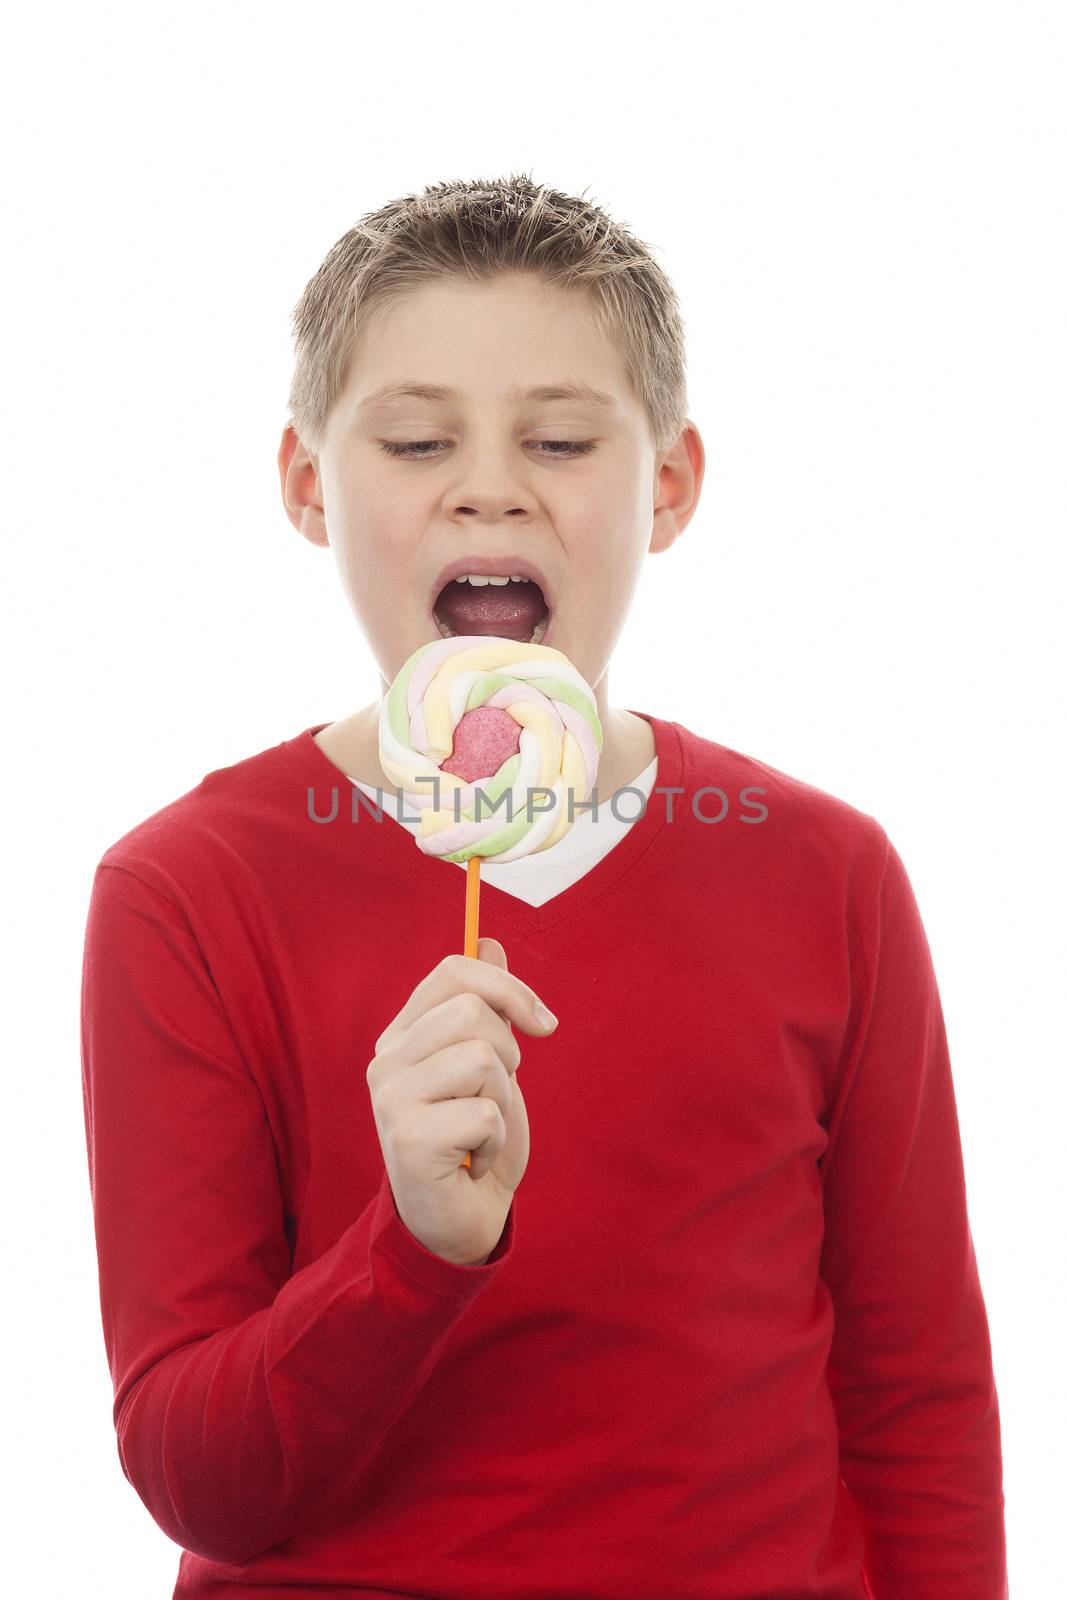 cute joyful boy with big lollipop by vwalakte